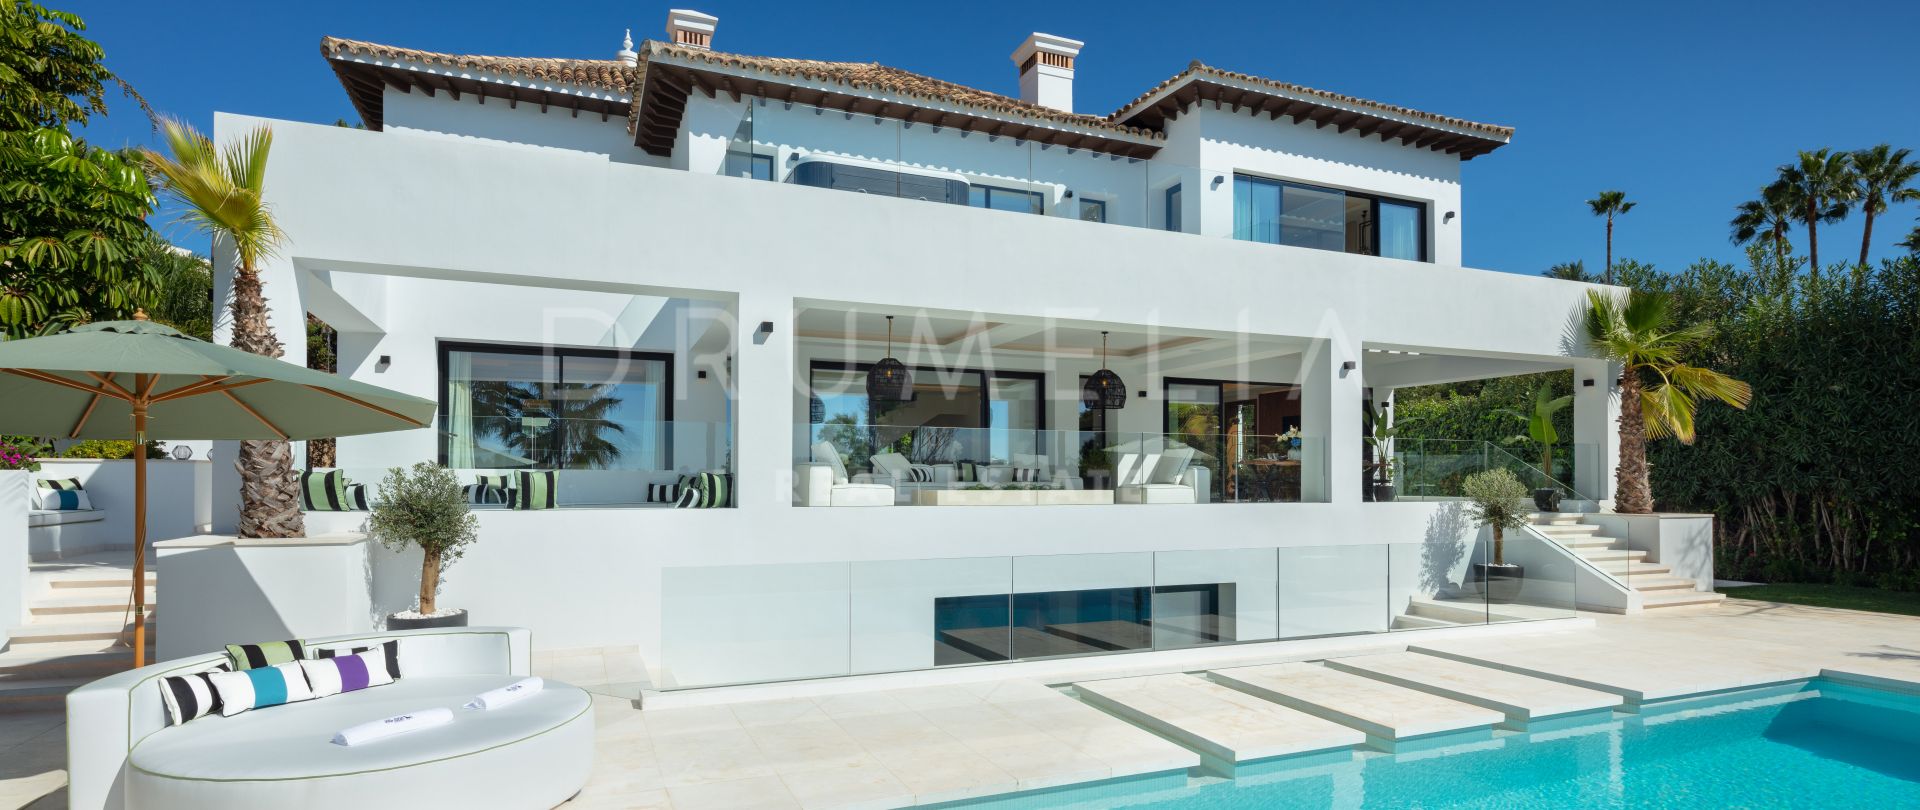 Villa 1000 - Anspruchsvolle moderne Luxus-Villa am Golfplatz mit weltlichem Flair, Nueva Andalucía